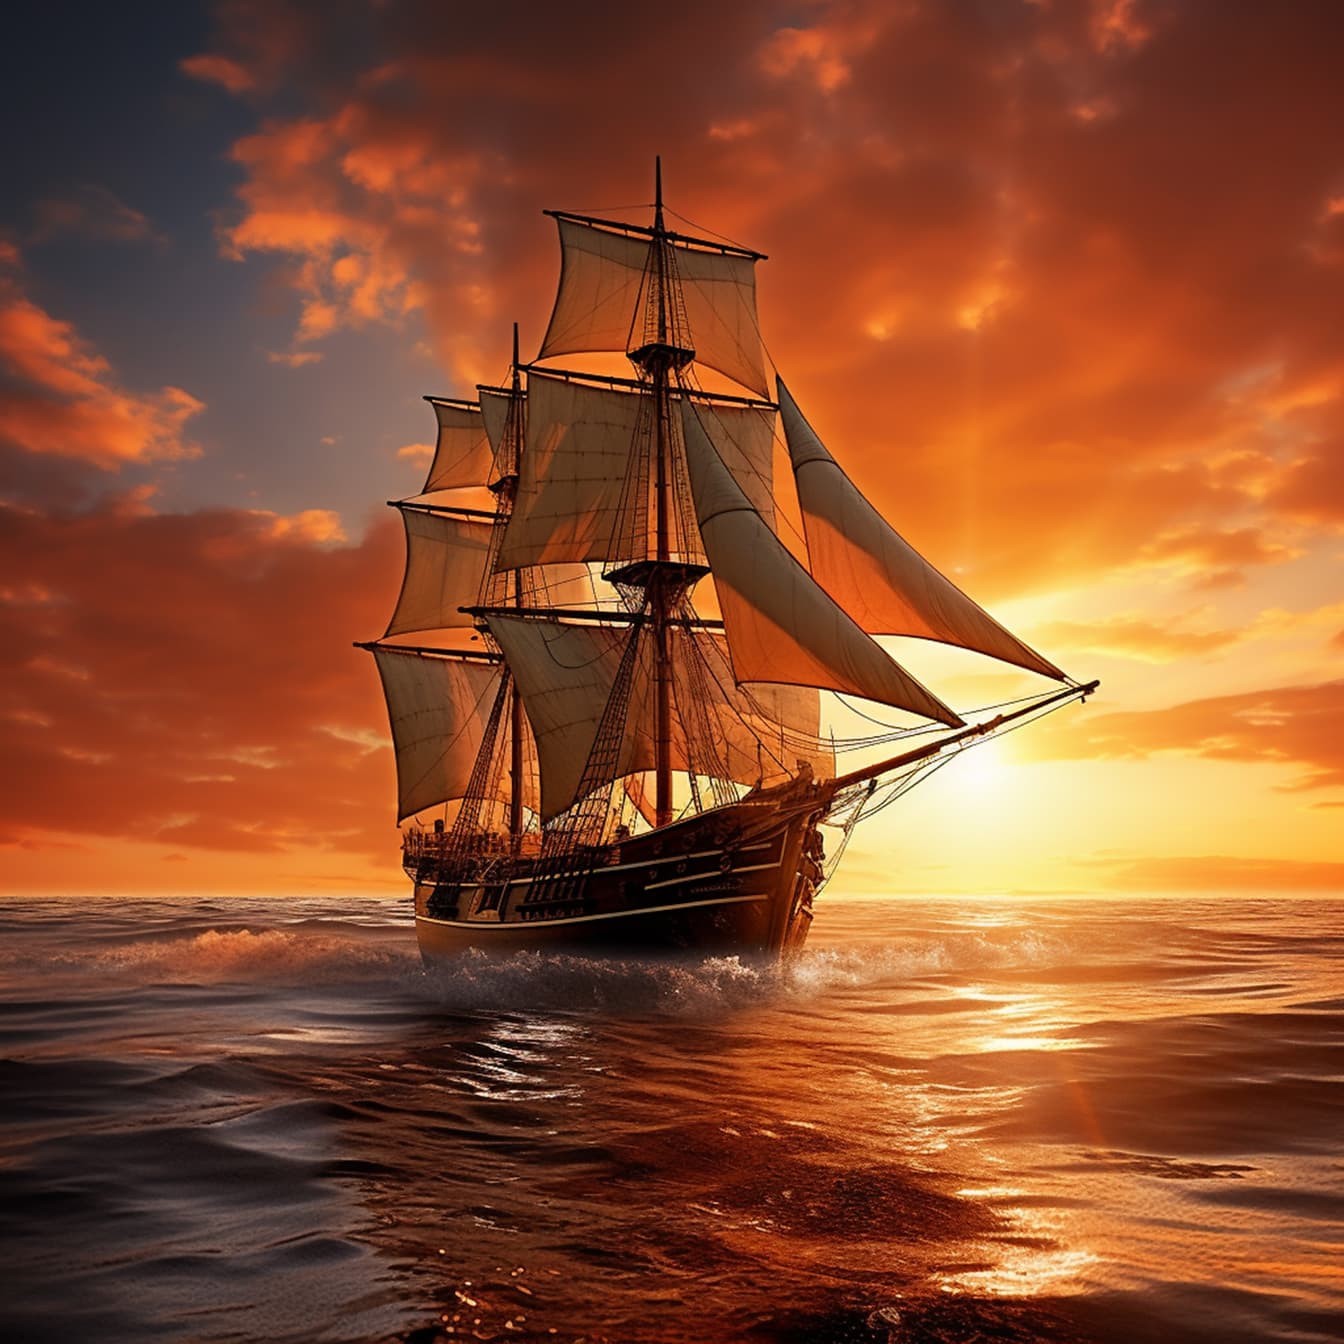 Gammalt segelfartyg på havsvågor med dramatisk solnedgångbakgrund